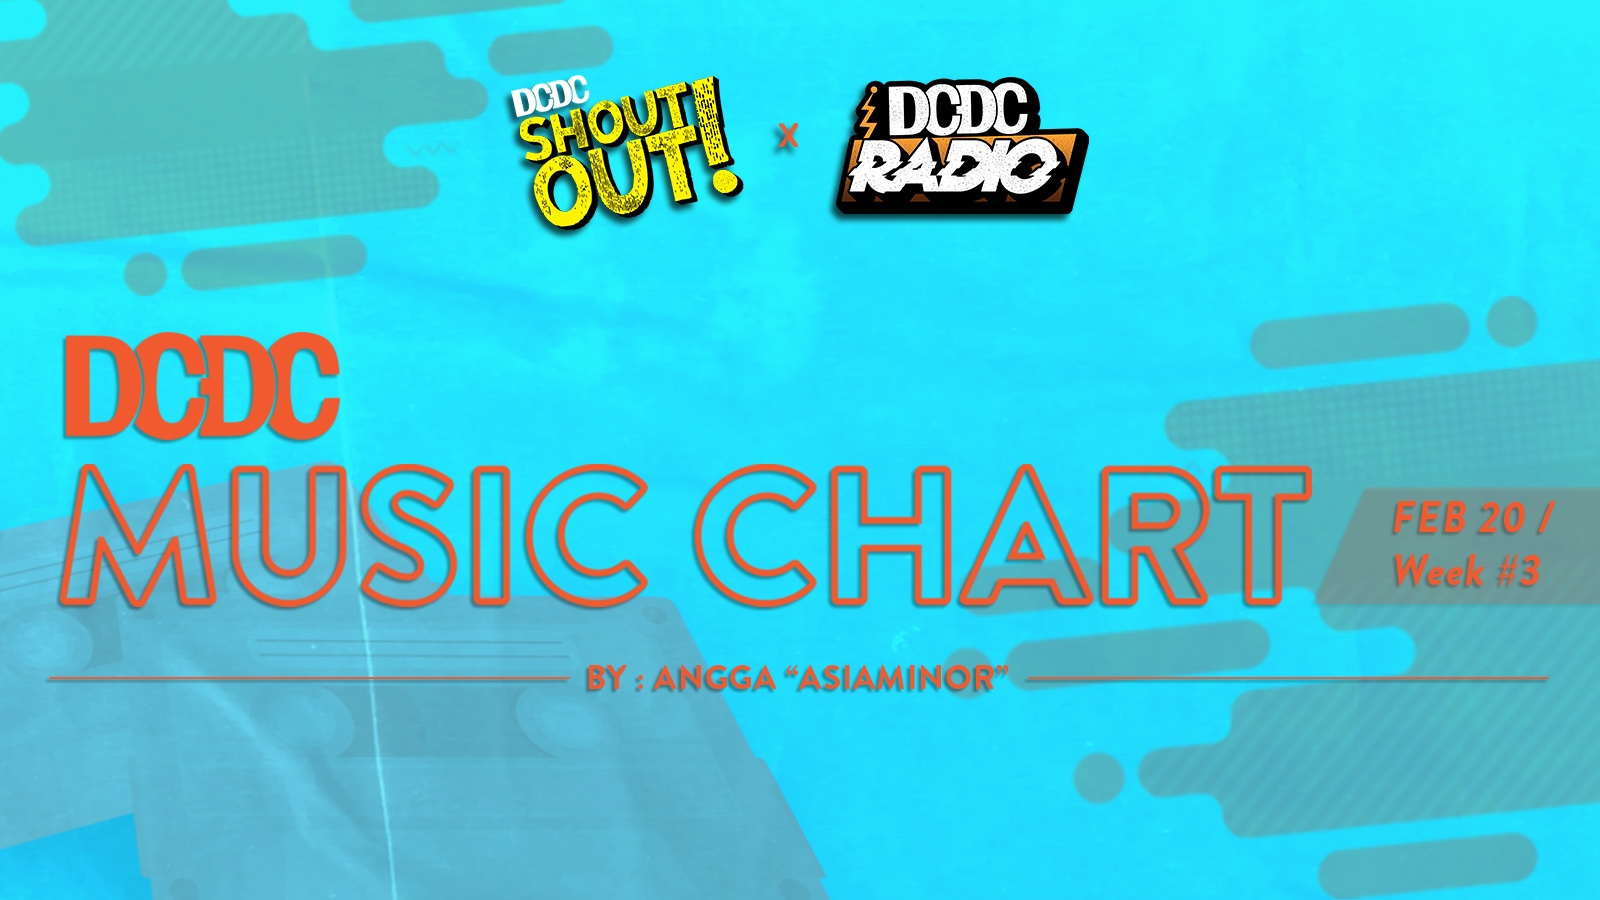 DCDC Music Chart - #3rd Week of Februari 2020